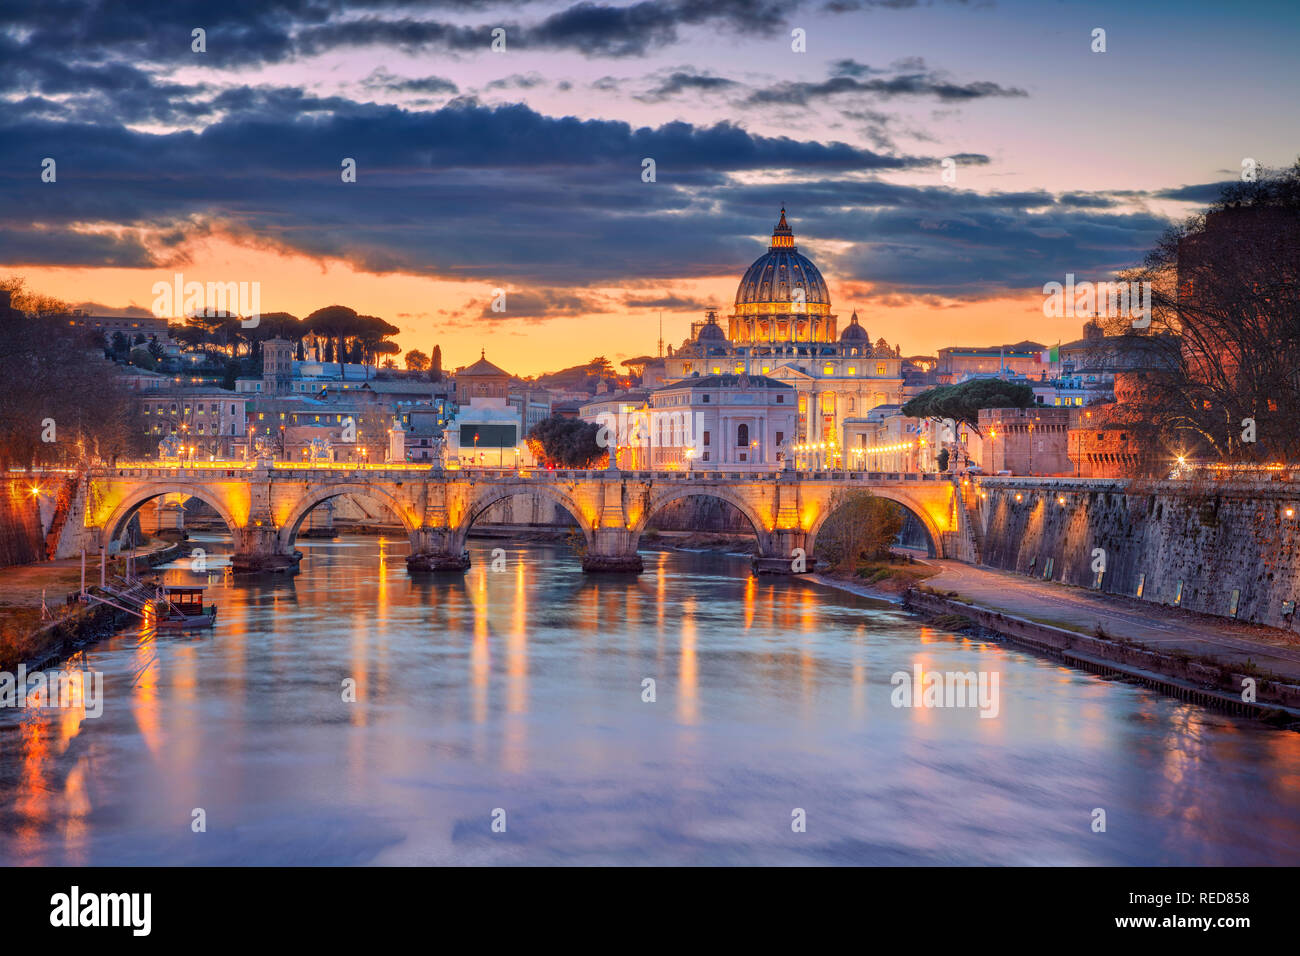 Imagen del paisaje urbano de Roma y la Ciudad del Vaticano con la Basílica de San Pedro durante el hermoso atardecer Foto de stock